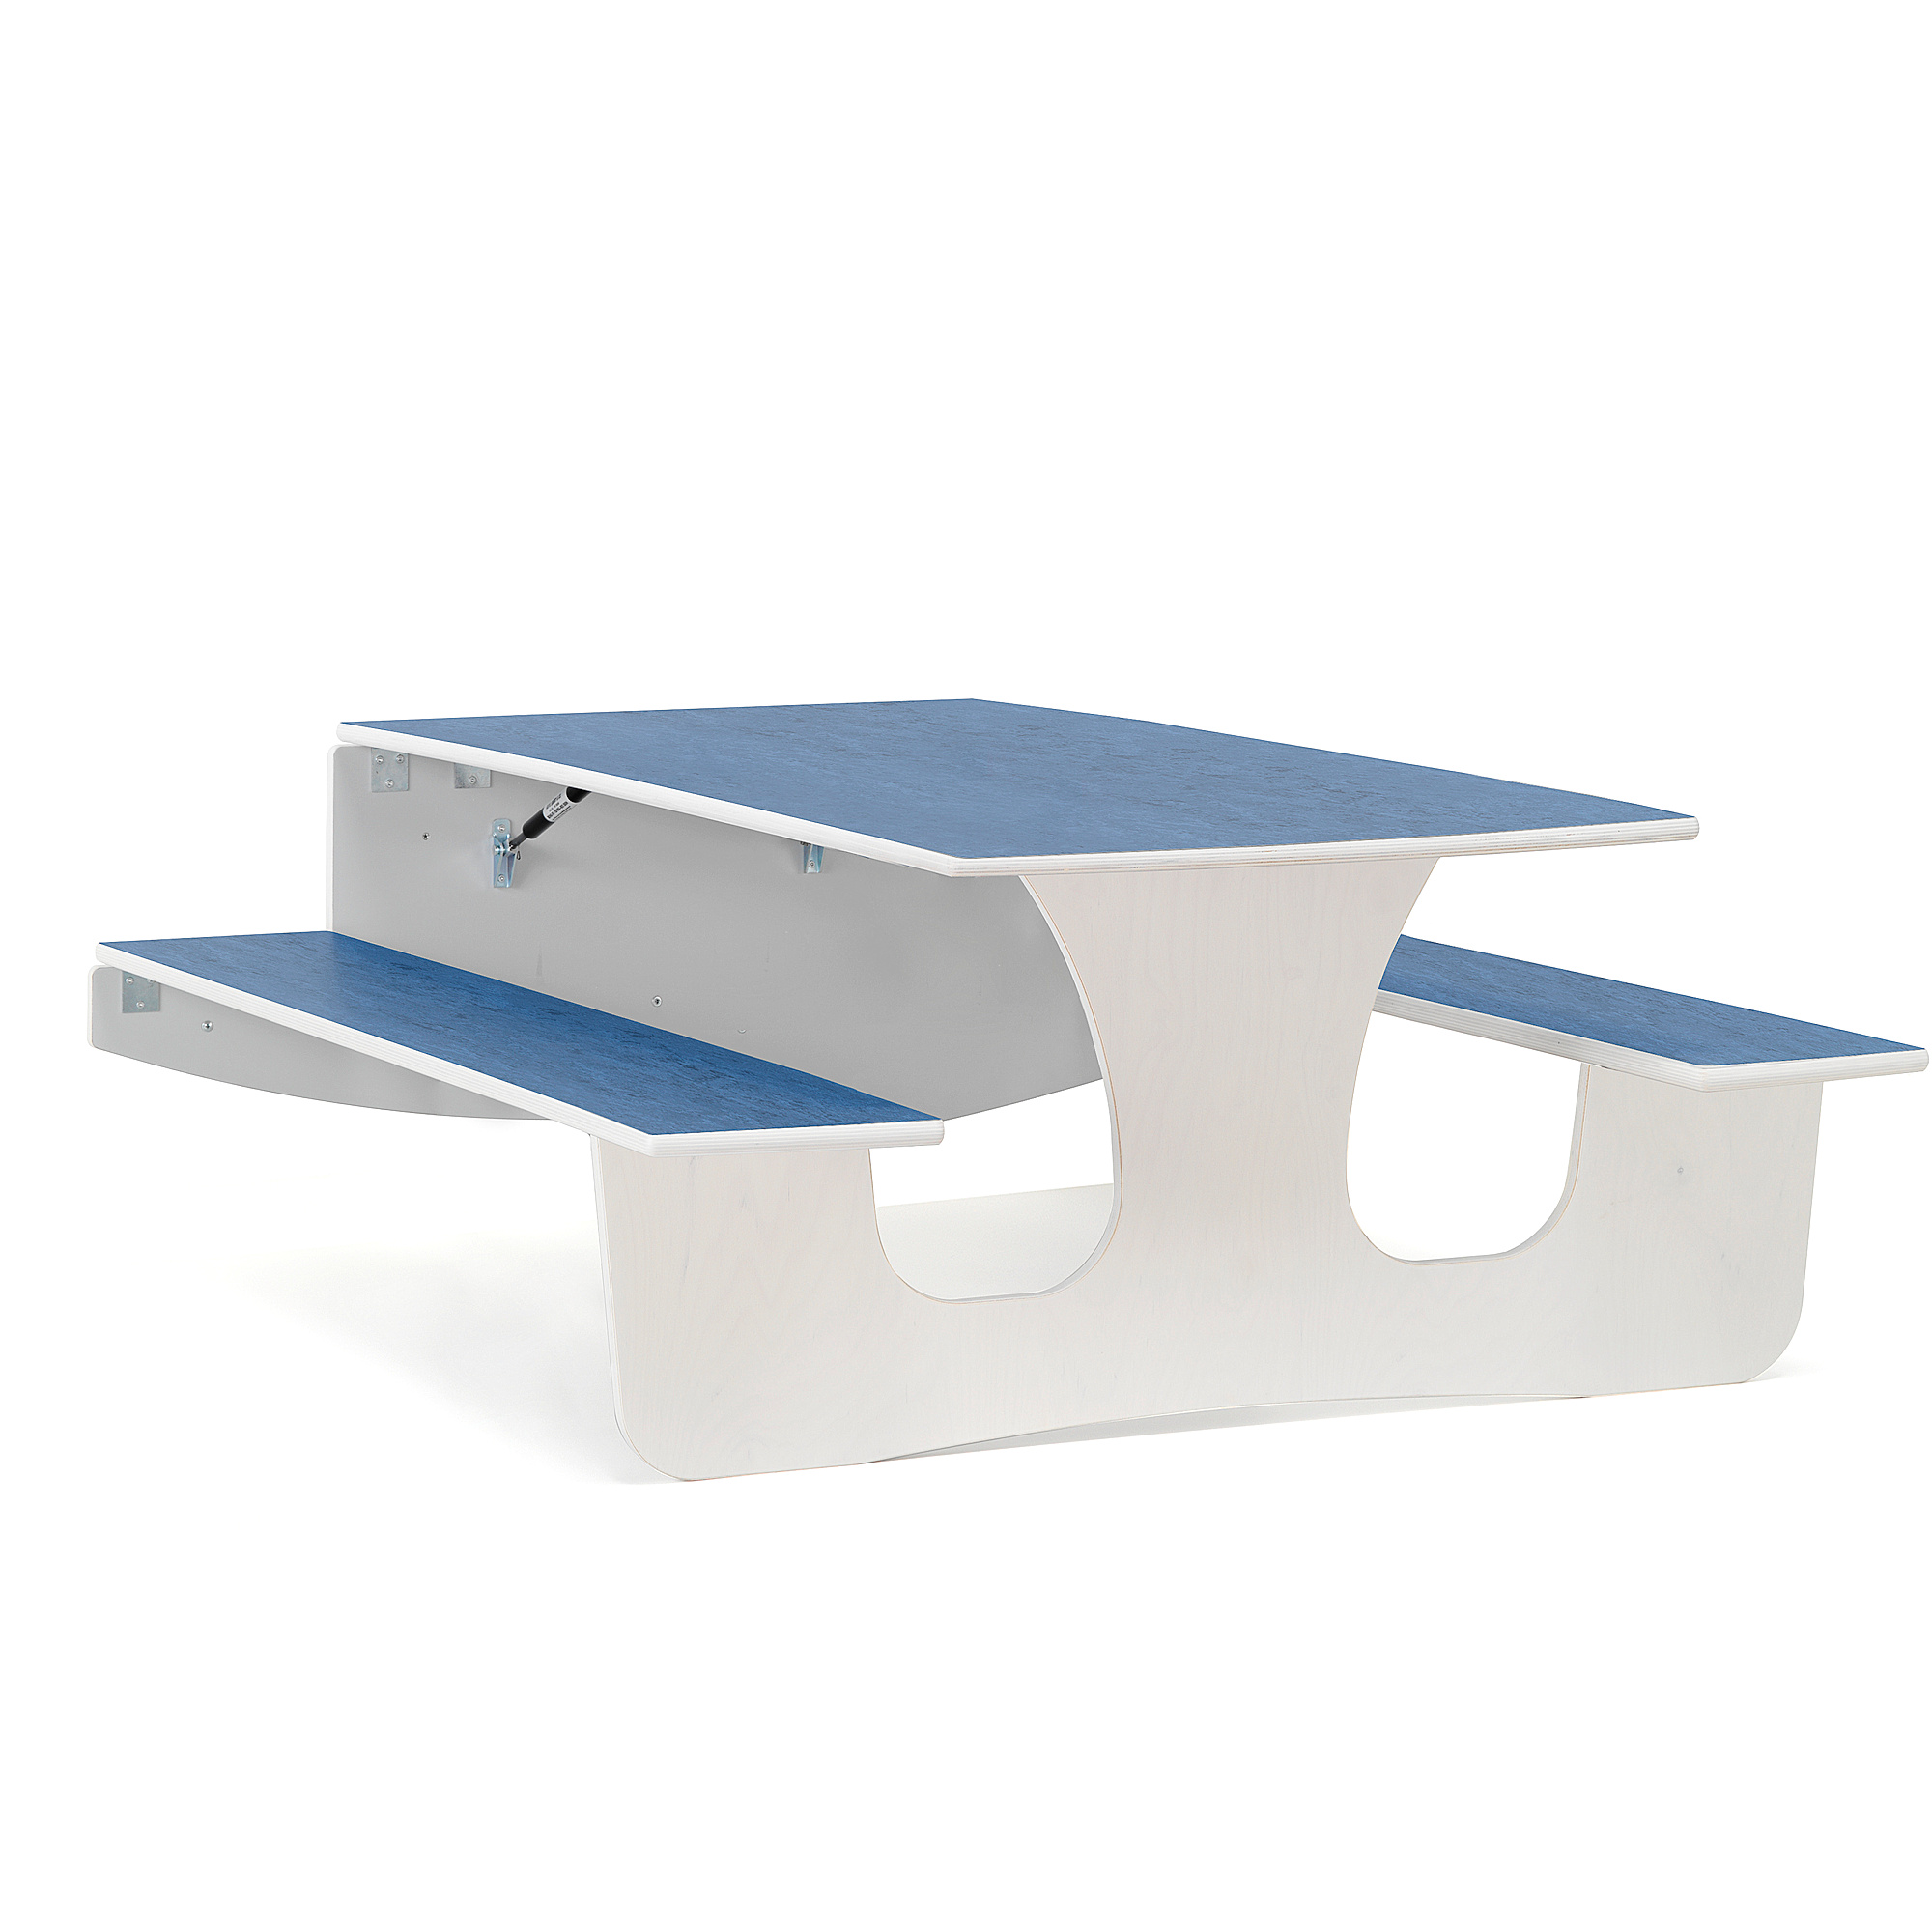 Nástěnný stůl LUCAS, 1400x1200x570 mm, bílá, modrá